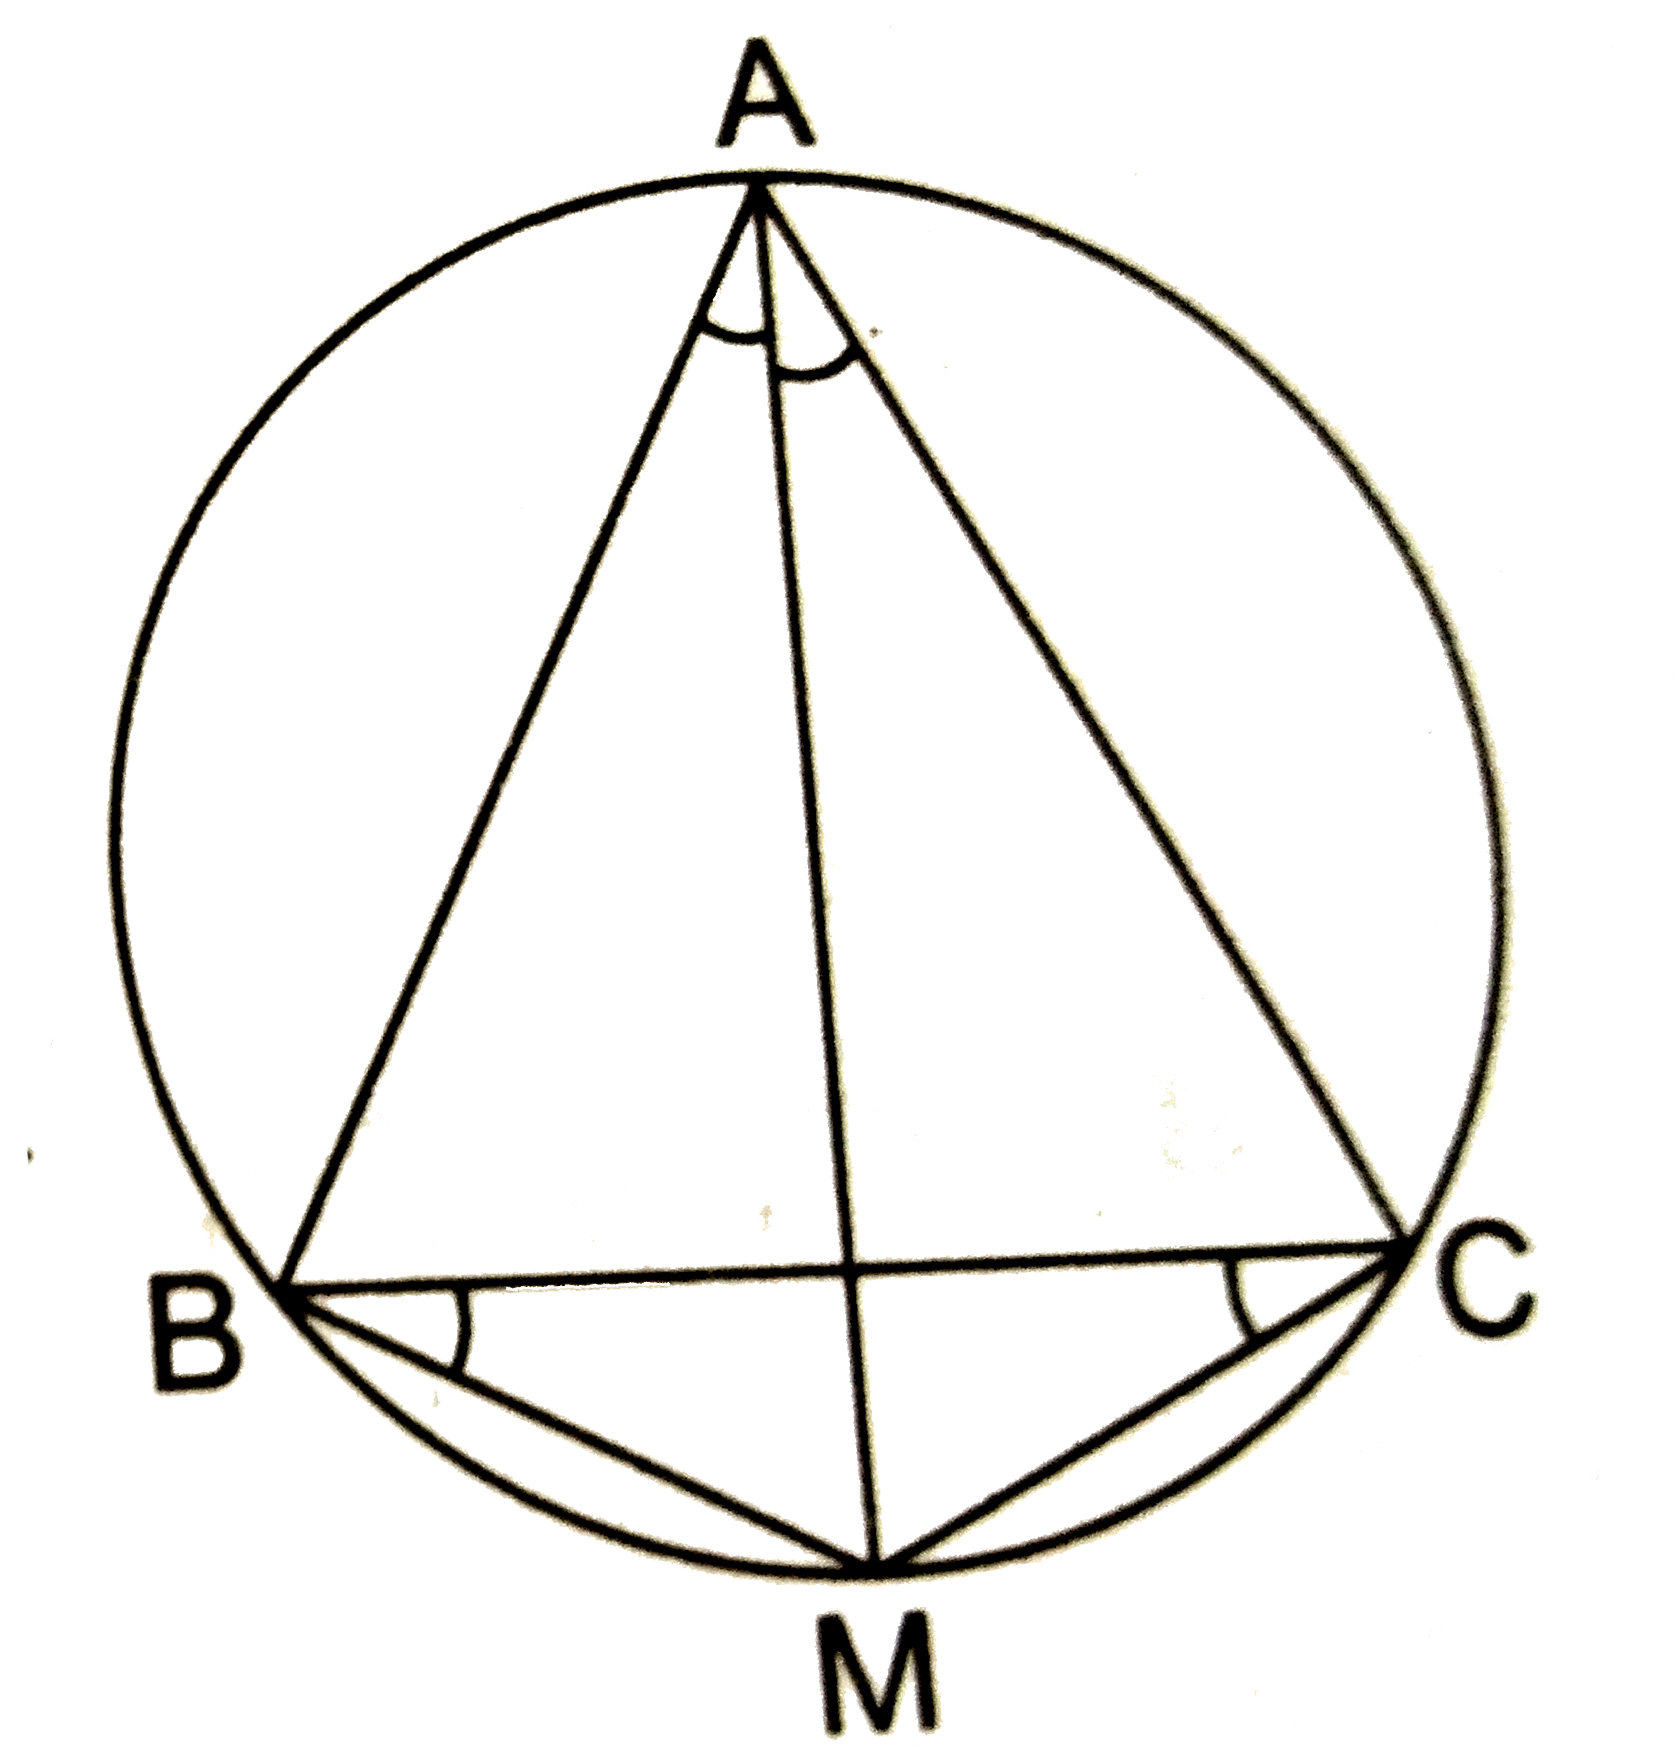 किसी त्रिभुज ABC में, यदि angleA का समद्विभाजक तथा BC का लम्ब समद्विभाजक प्रतिच्छेद करें, तो सिद्ध कीजिए कि वे DeltaABC के परिवृत्त पर प्रतिच्छेद करेंगे |